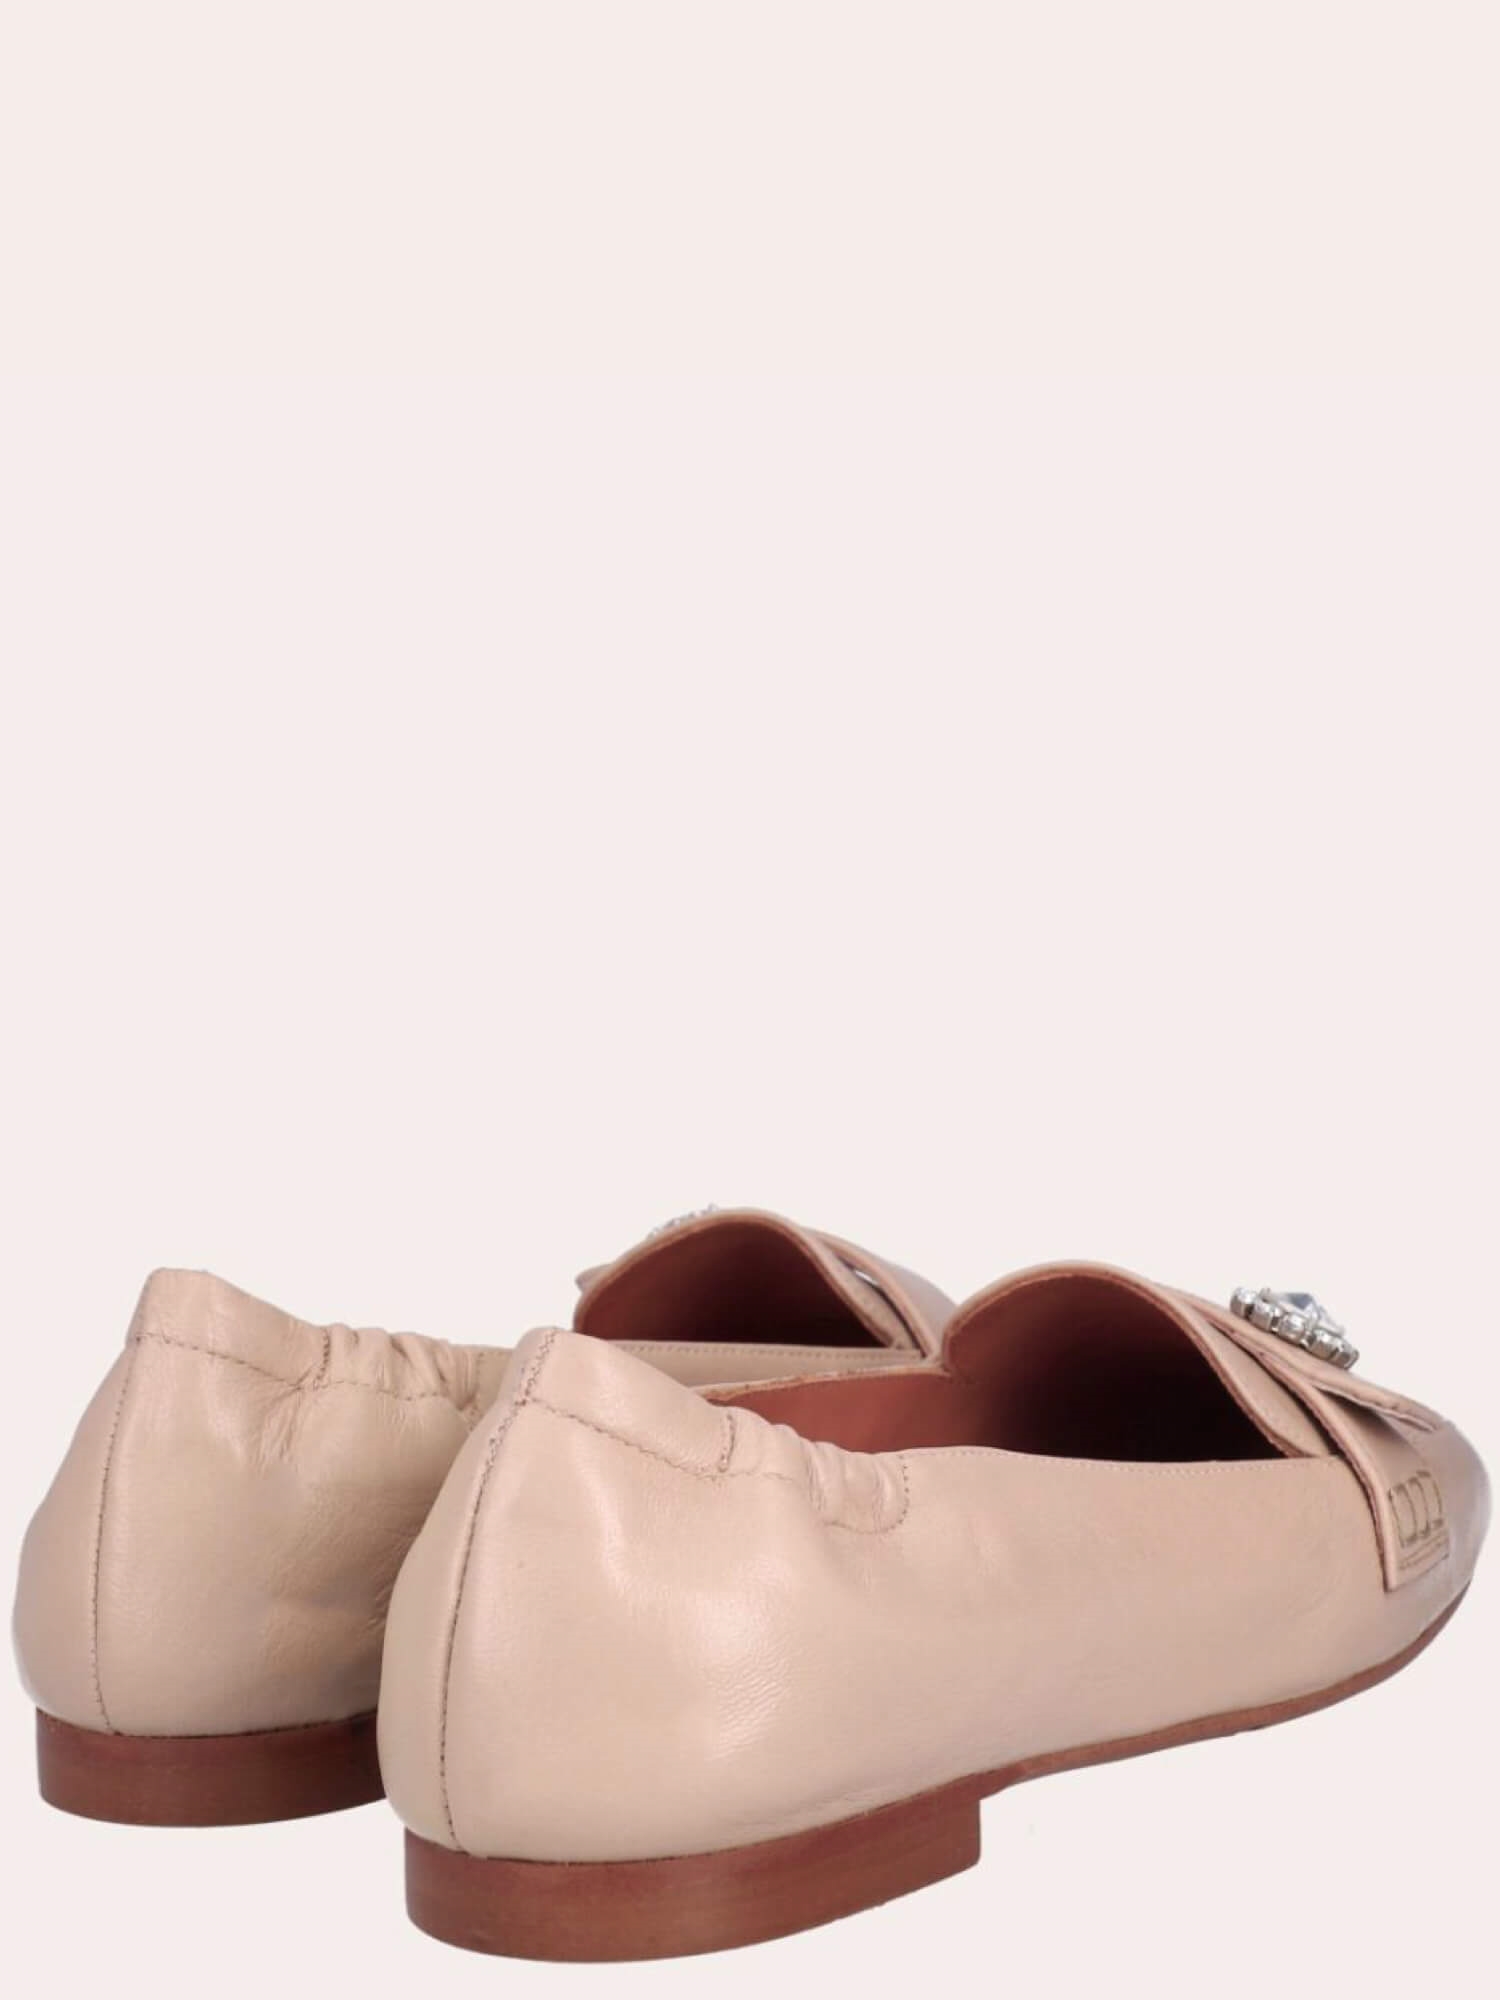 A4523 Loafers fra Billi i Rose Nappa → køb nu